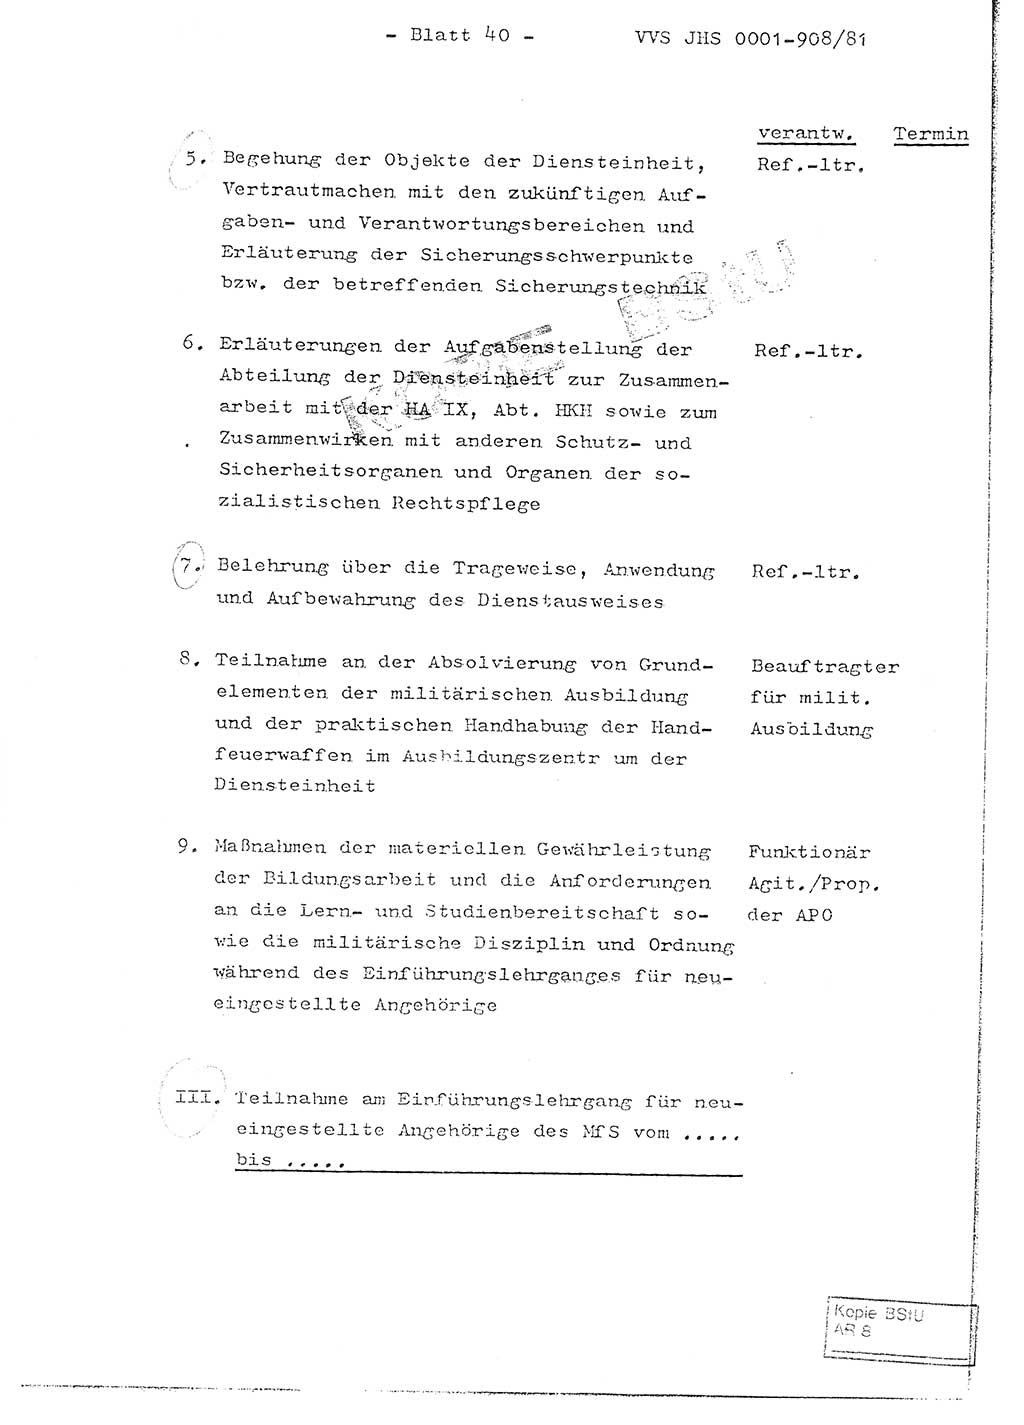 Fachschulabschlußarbeit Oberleutnant Wolfgang Wittmann (Abt. ⅩⅣ), Ministerium für Staatssicherheit (MfS) [Deutsche Demokratische Republik (DDR)], Juristische Hochschule (JHS), Vertrauliche Verschlußsache (VVS) o001-908/82, Potsdam 1982, Blatt 40 (FS-Abschl.-Arb. MfS DDR JHS VVS o001-908/82 1982, Bl. 40)